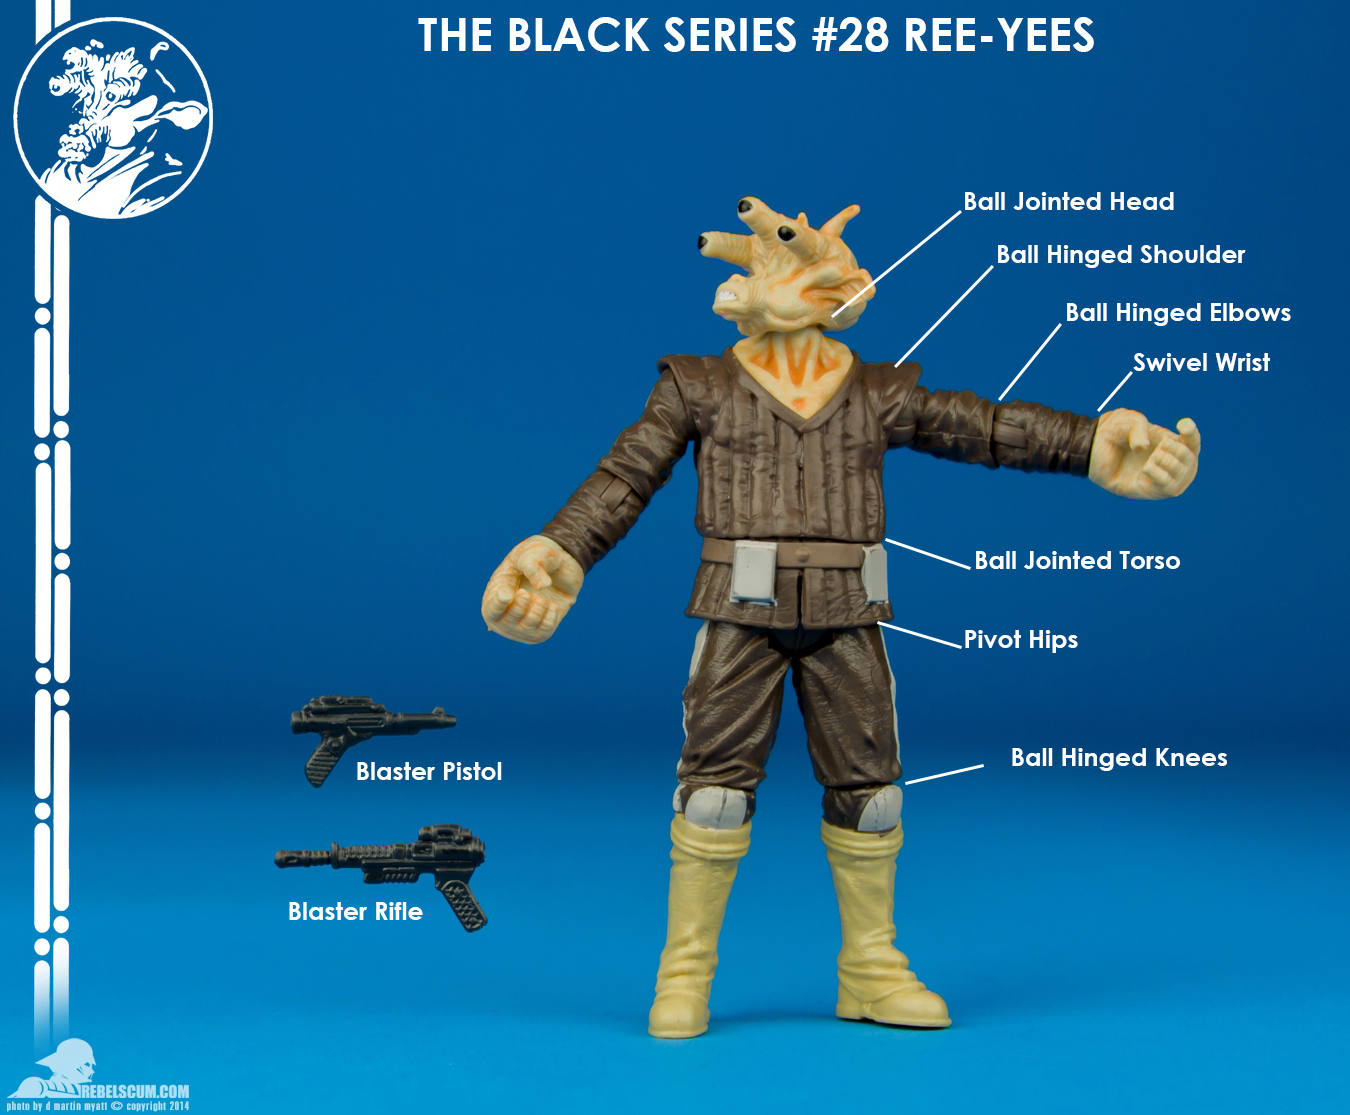 28-Ree-Yees-The-Black-Series-Star-Wars-010.jpg